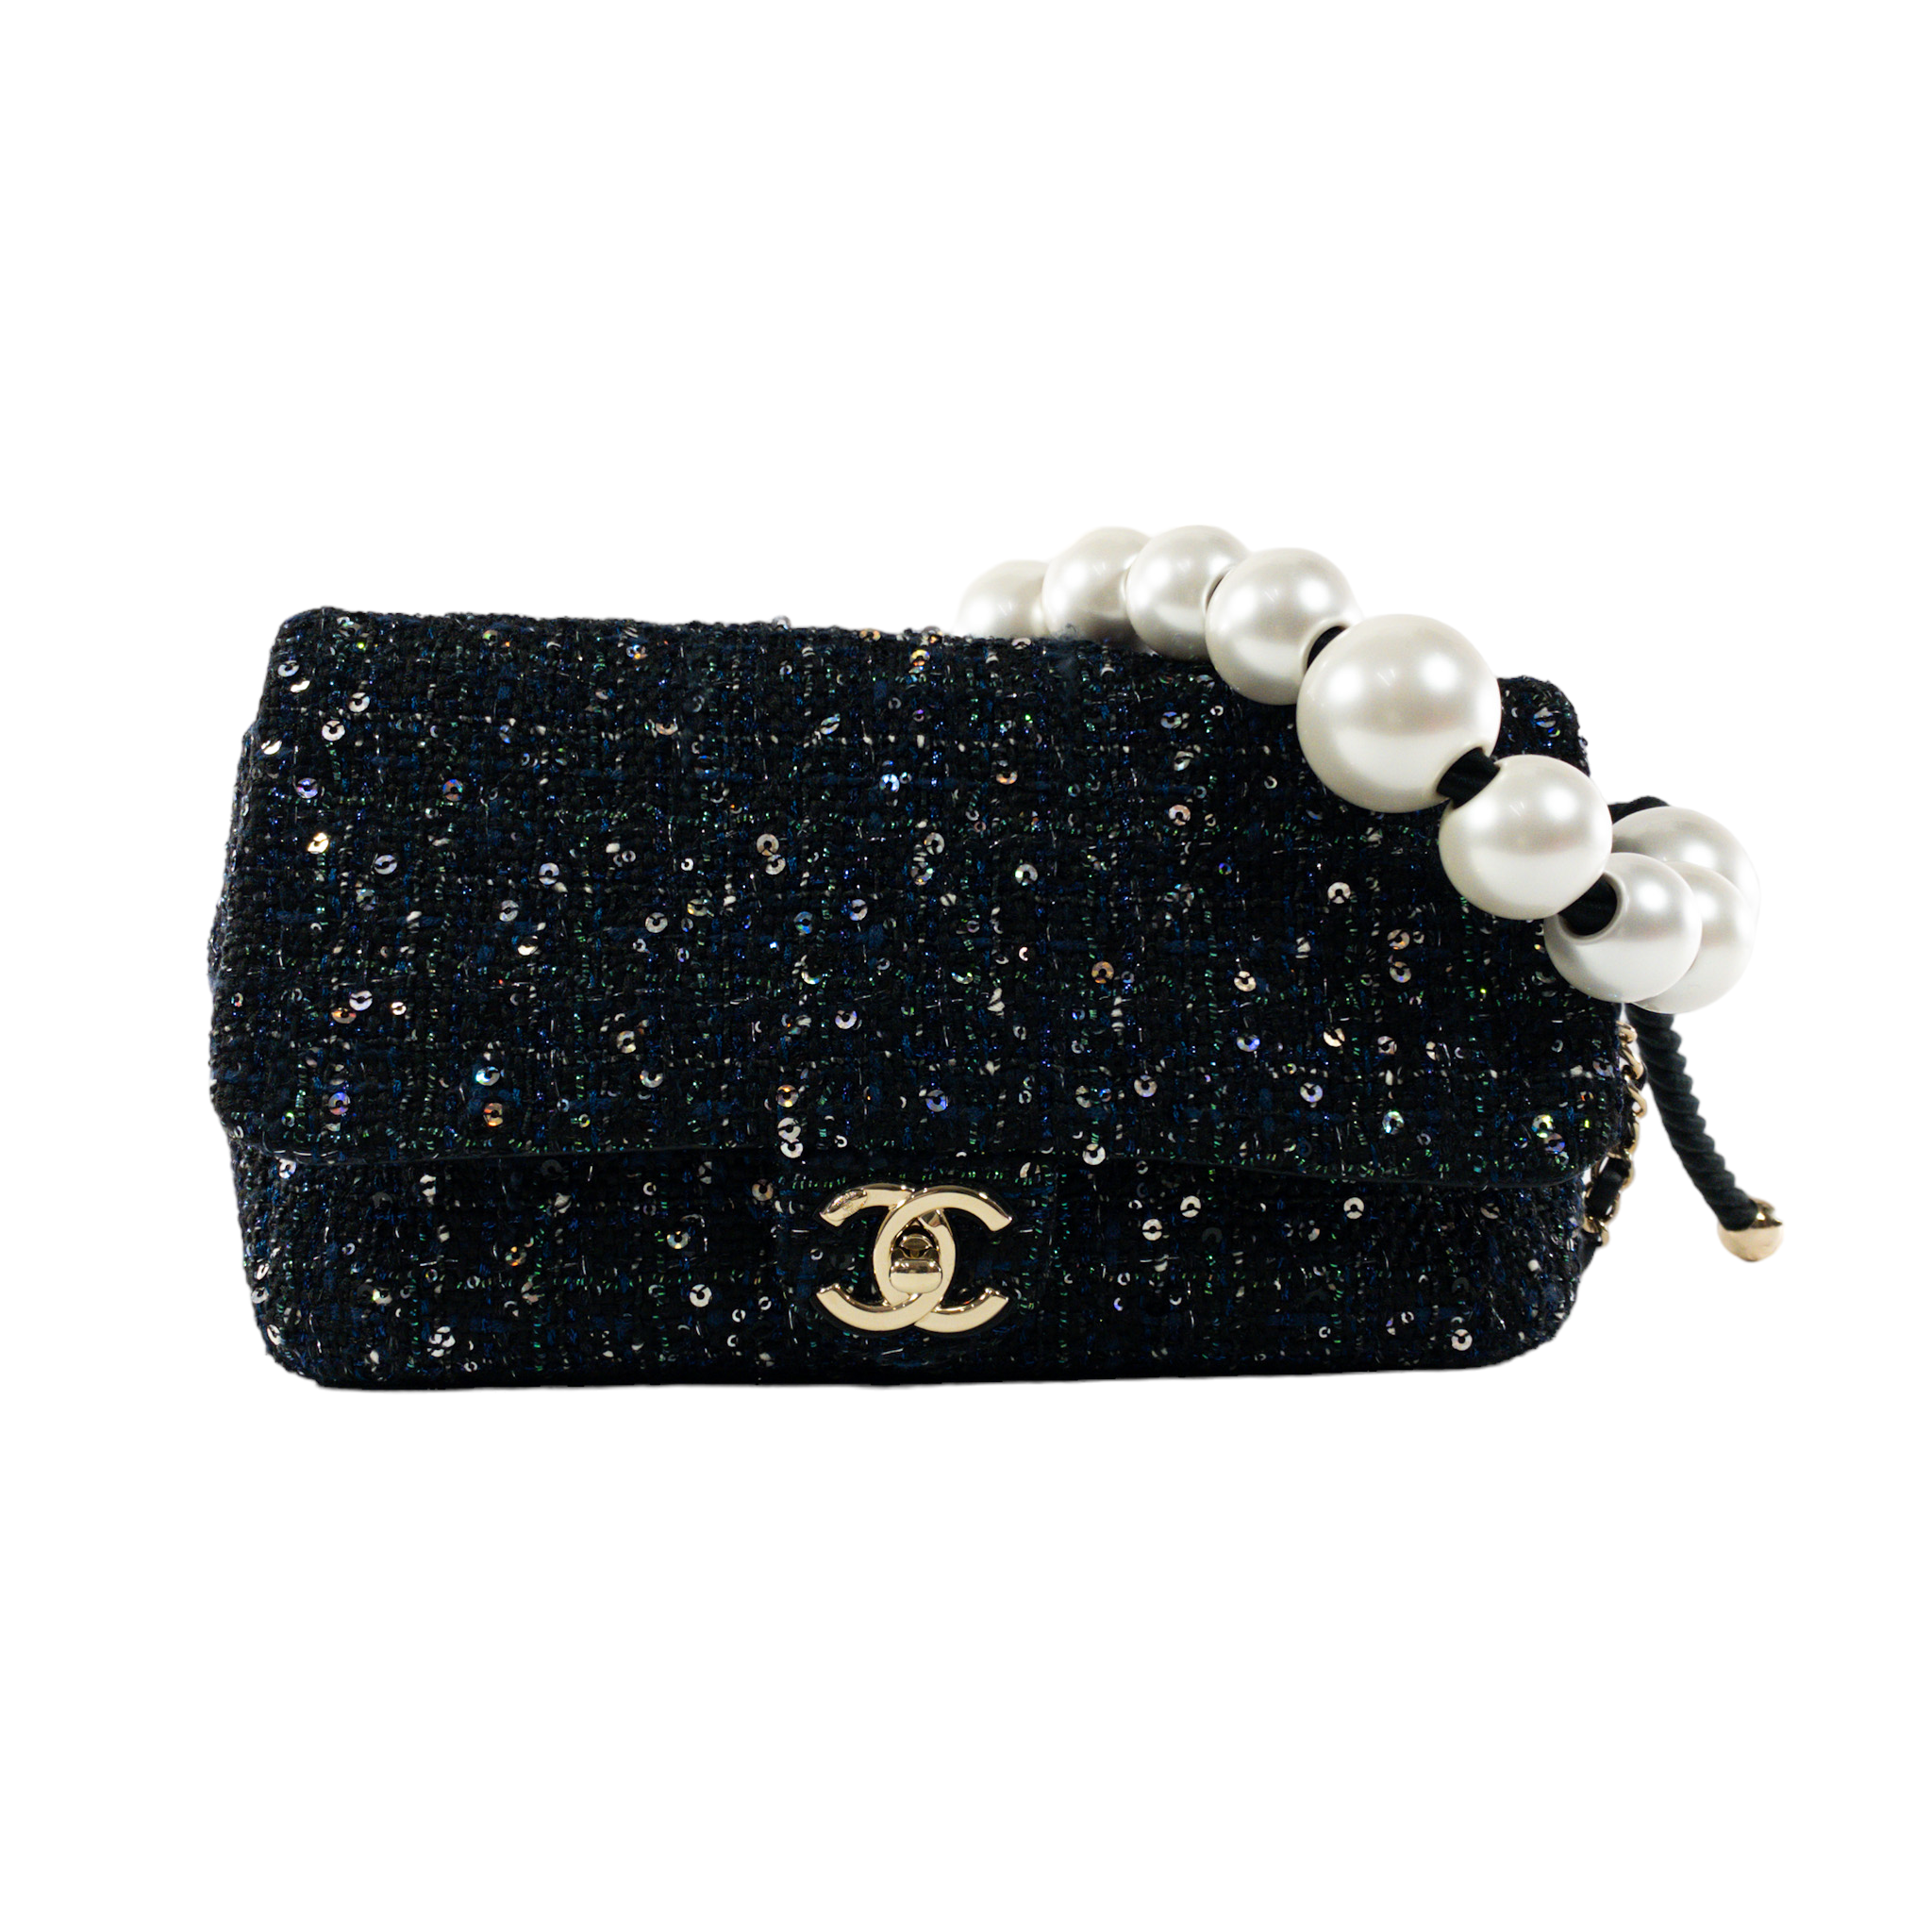 chanel handbag new with tags